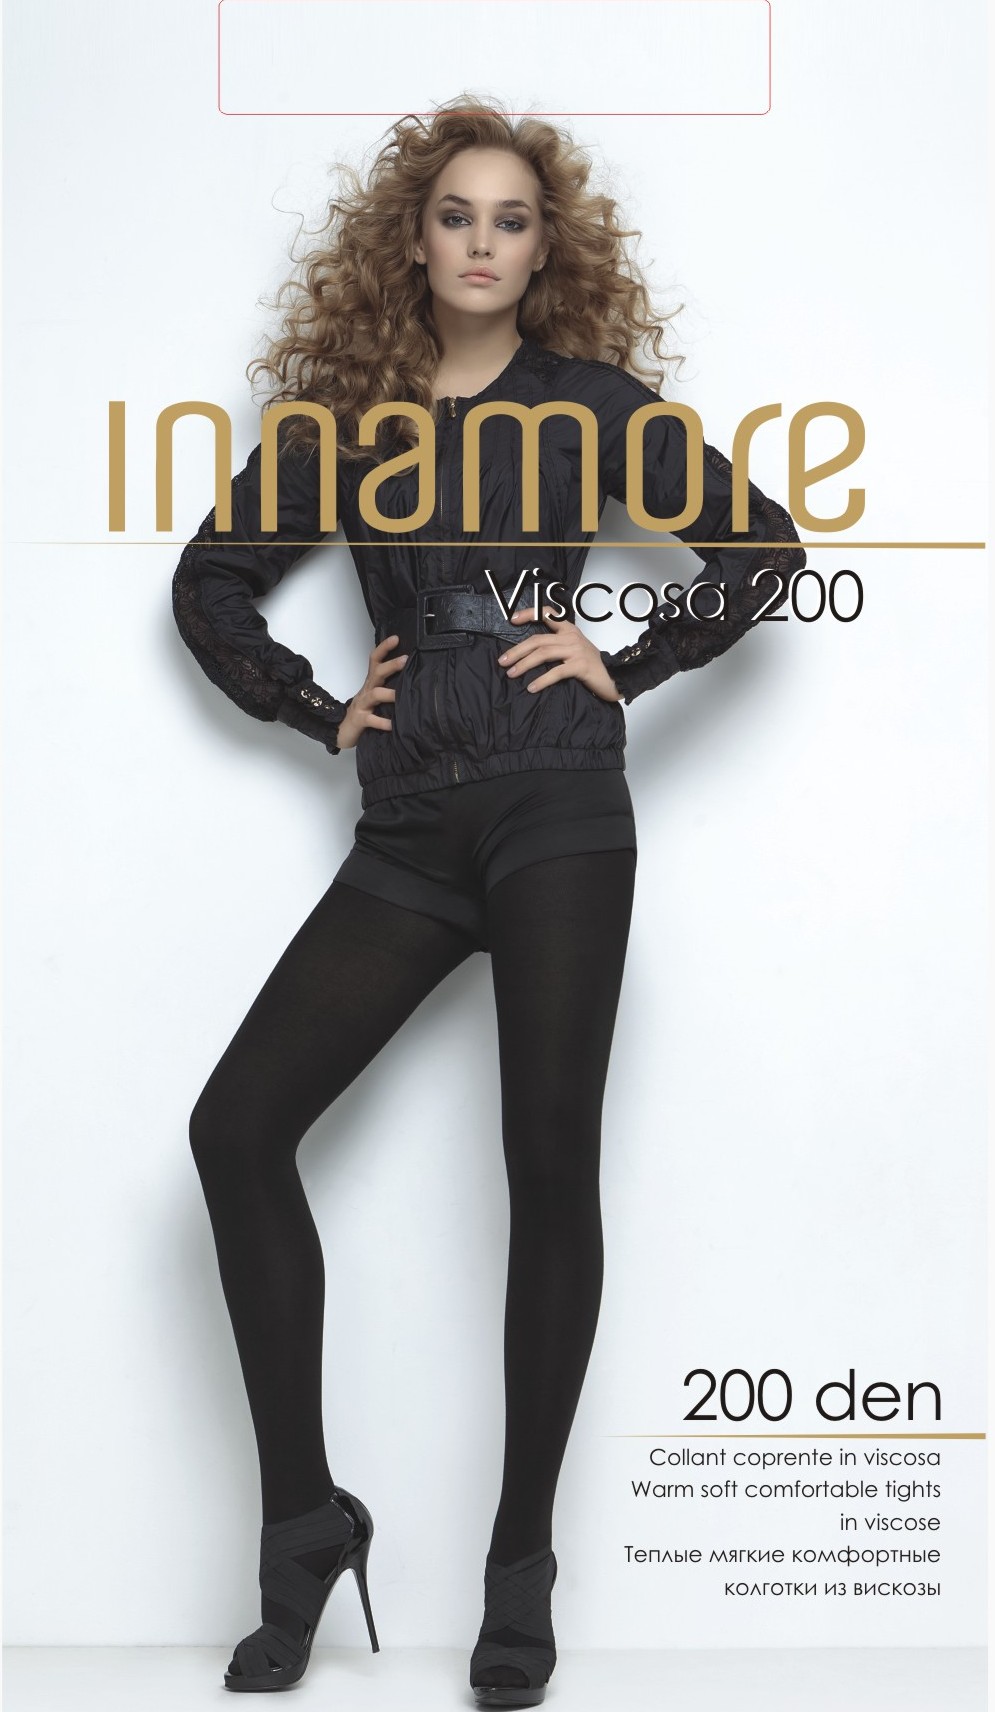 Колготки тёплые Innamore Viscosa 200 ден купить в интернет-магазине.  Доставка почтой во все регионы РФ